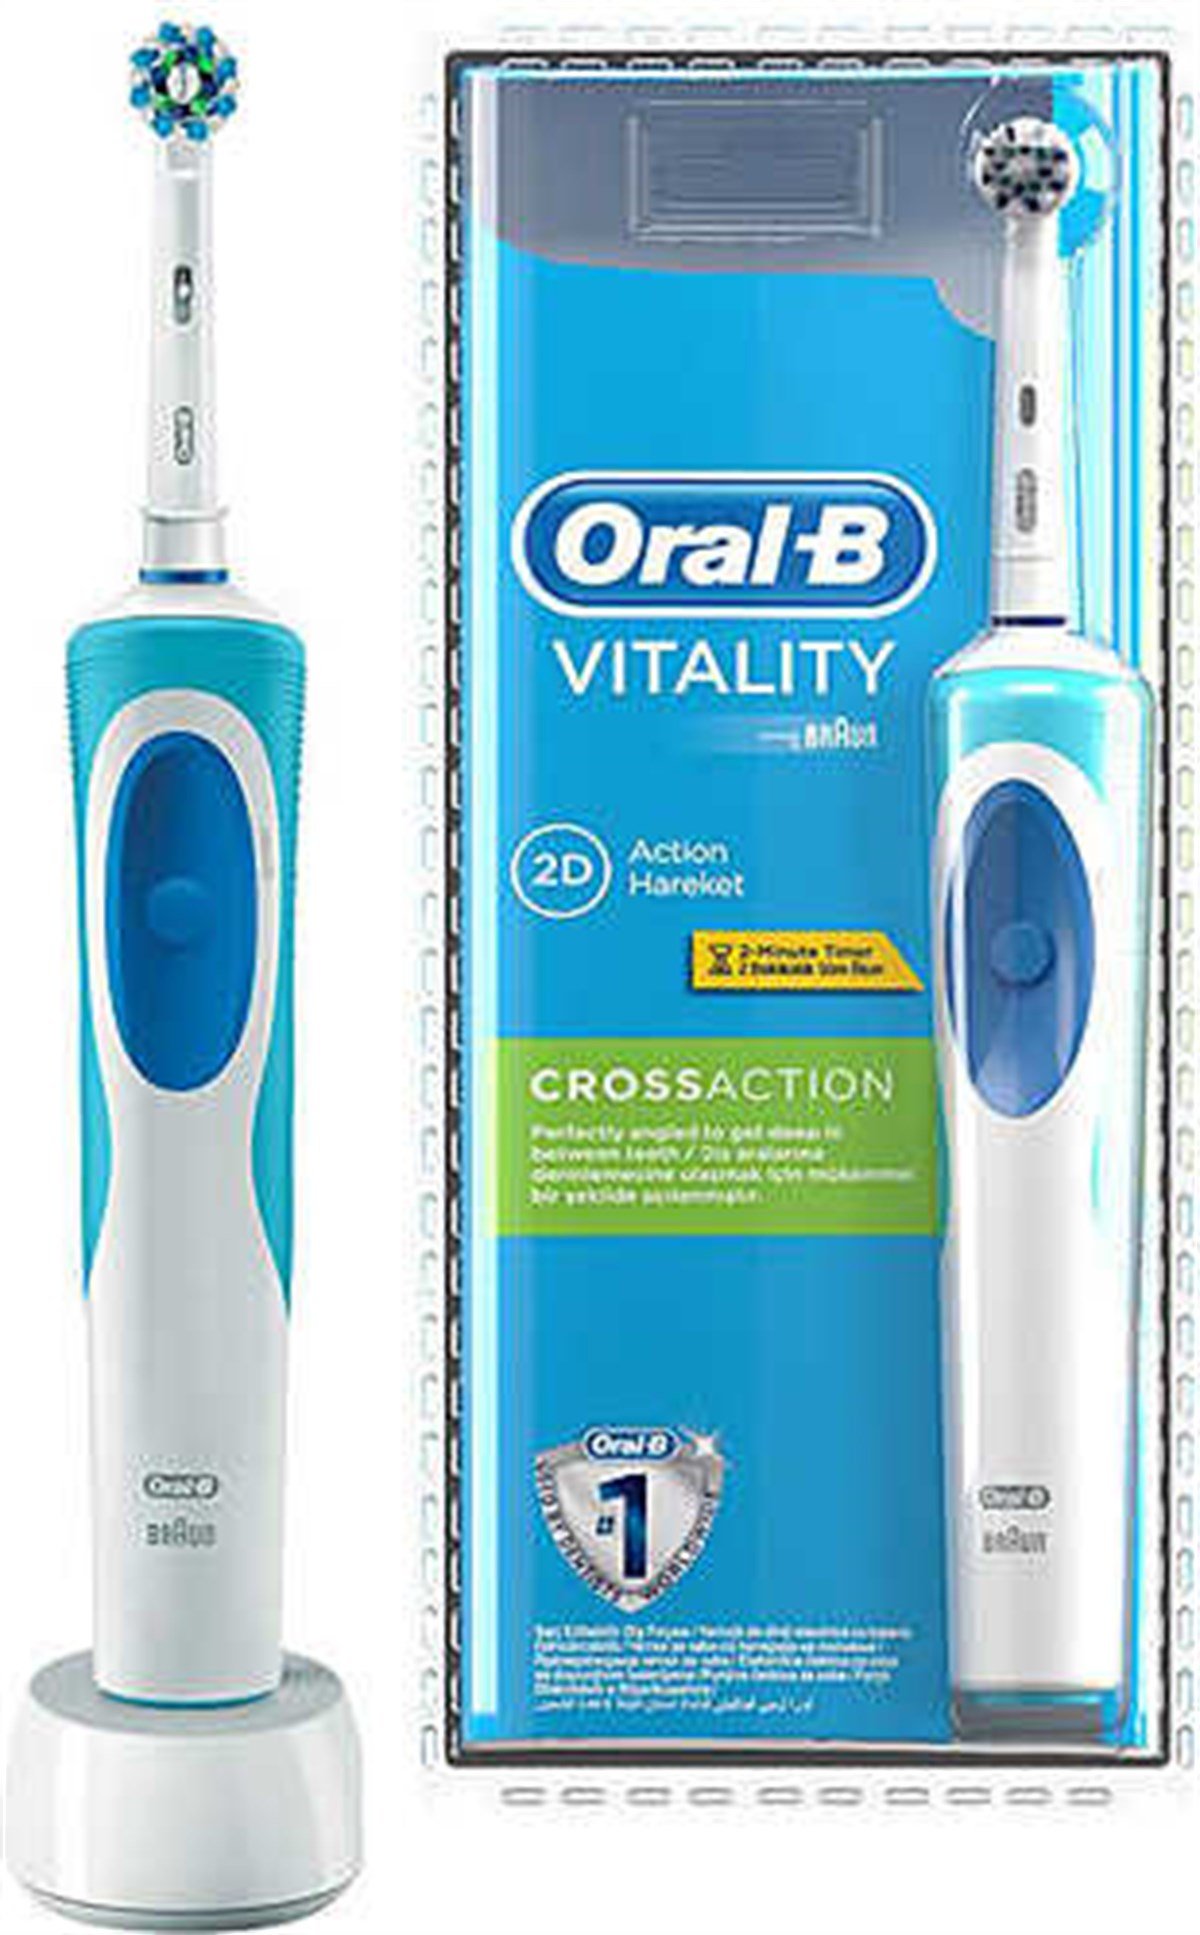 Oral-B Vitality Cross Action Şarjlı Diş Fırçası Fiyatları | Dermosiparis.com